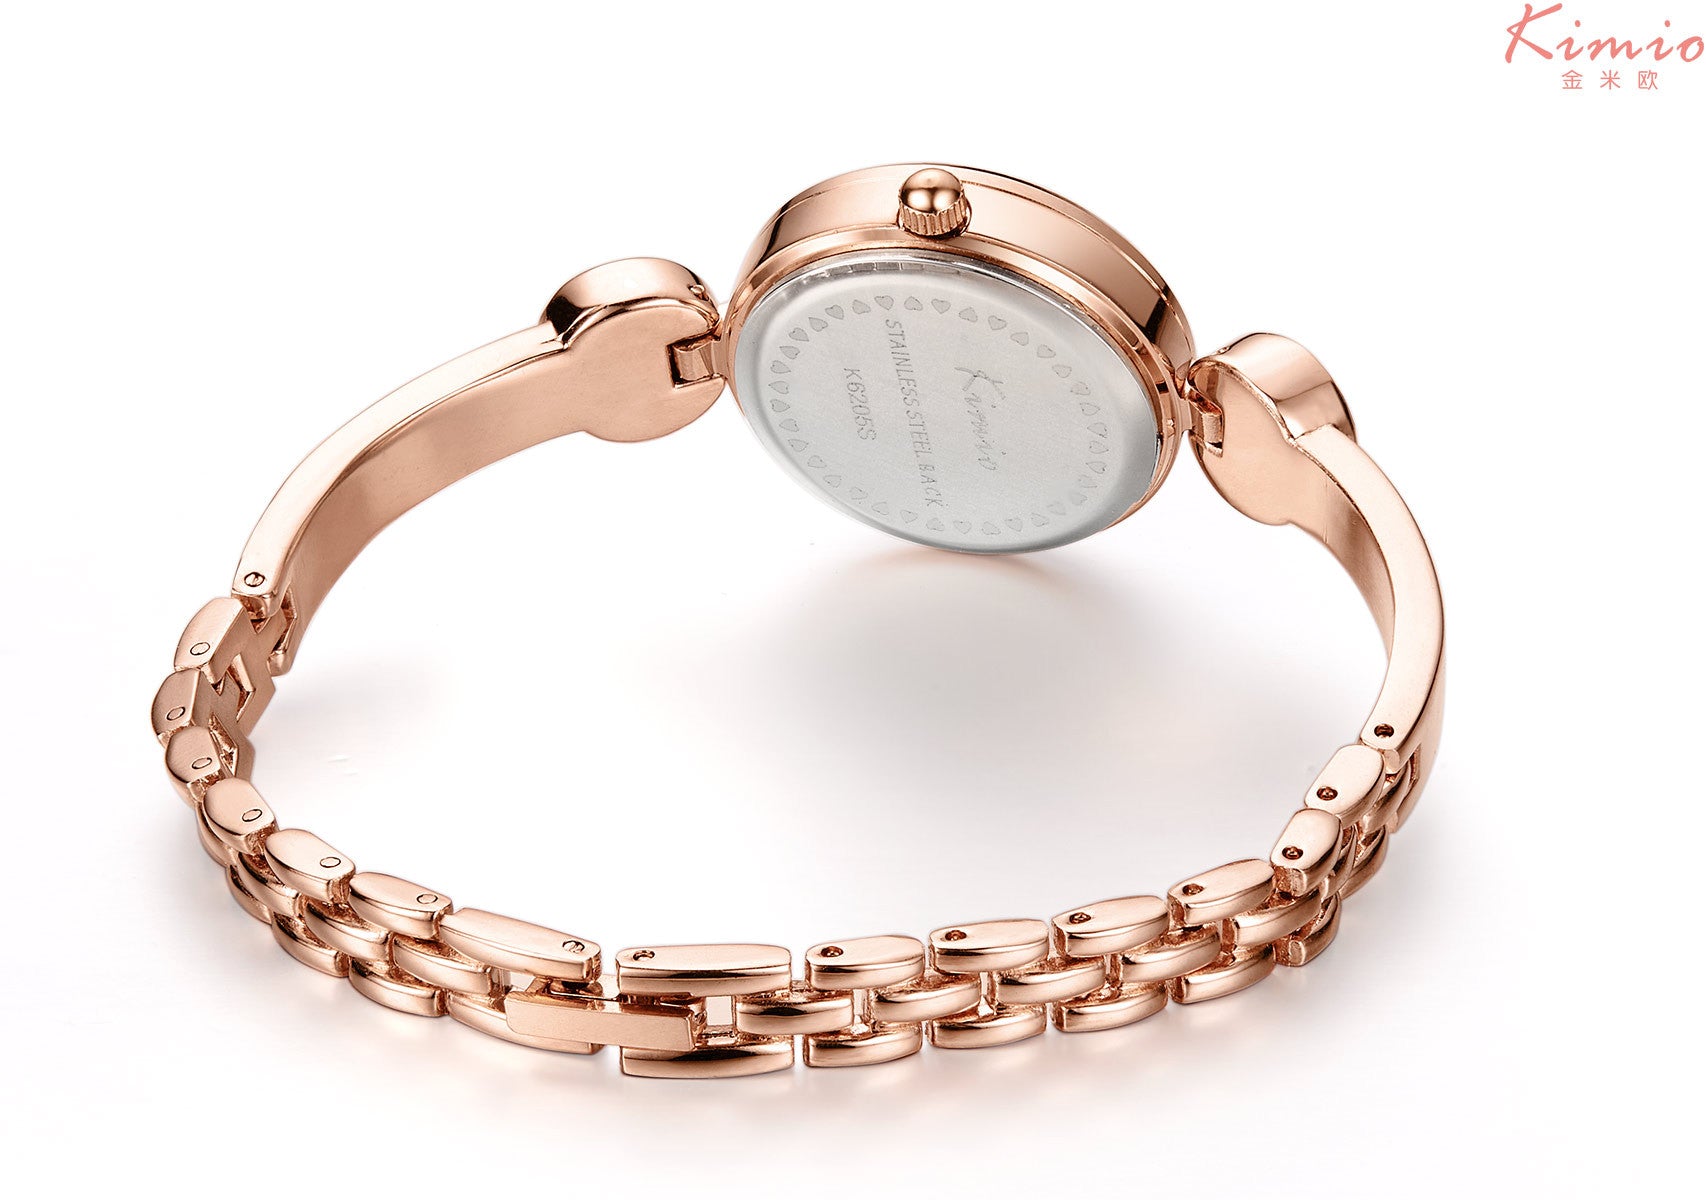 Kimio luxury ladies watch bracelet watches